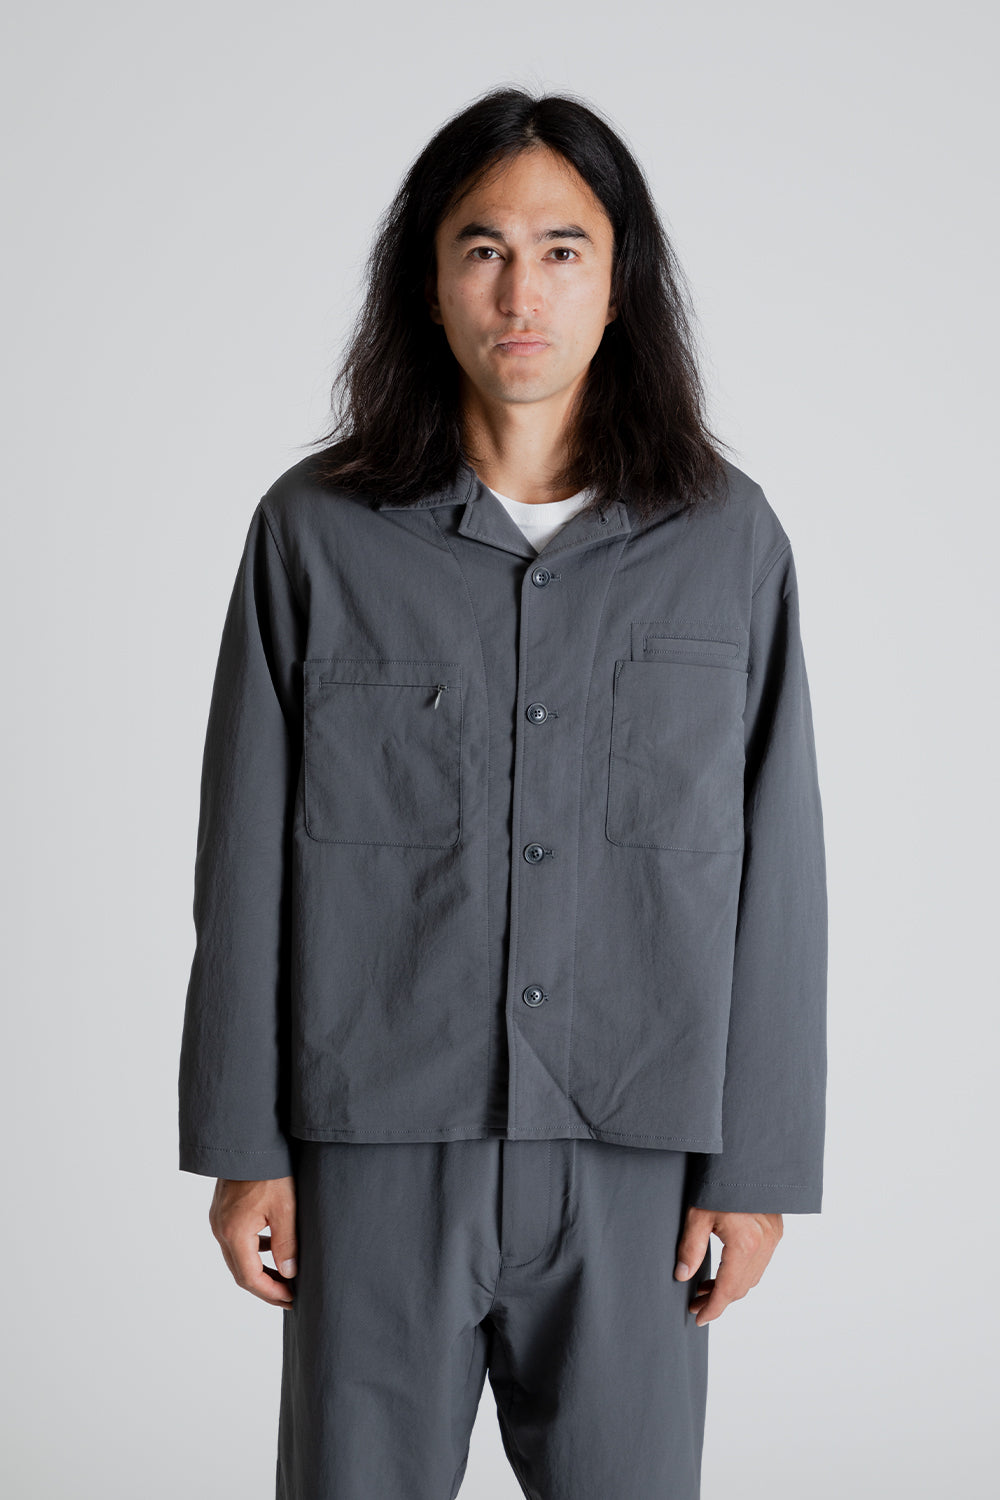 【再販】nanamica ALPHADRY Shirt Jacket S ブラック ジャケット・アウター